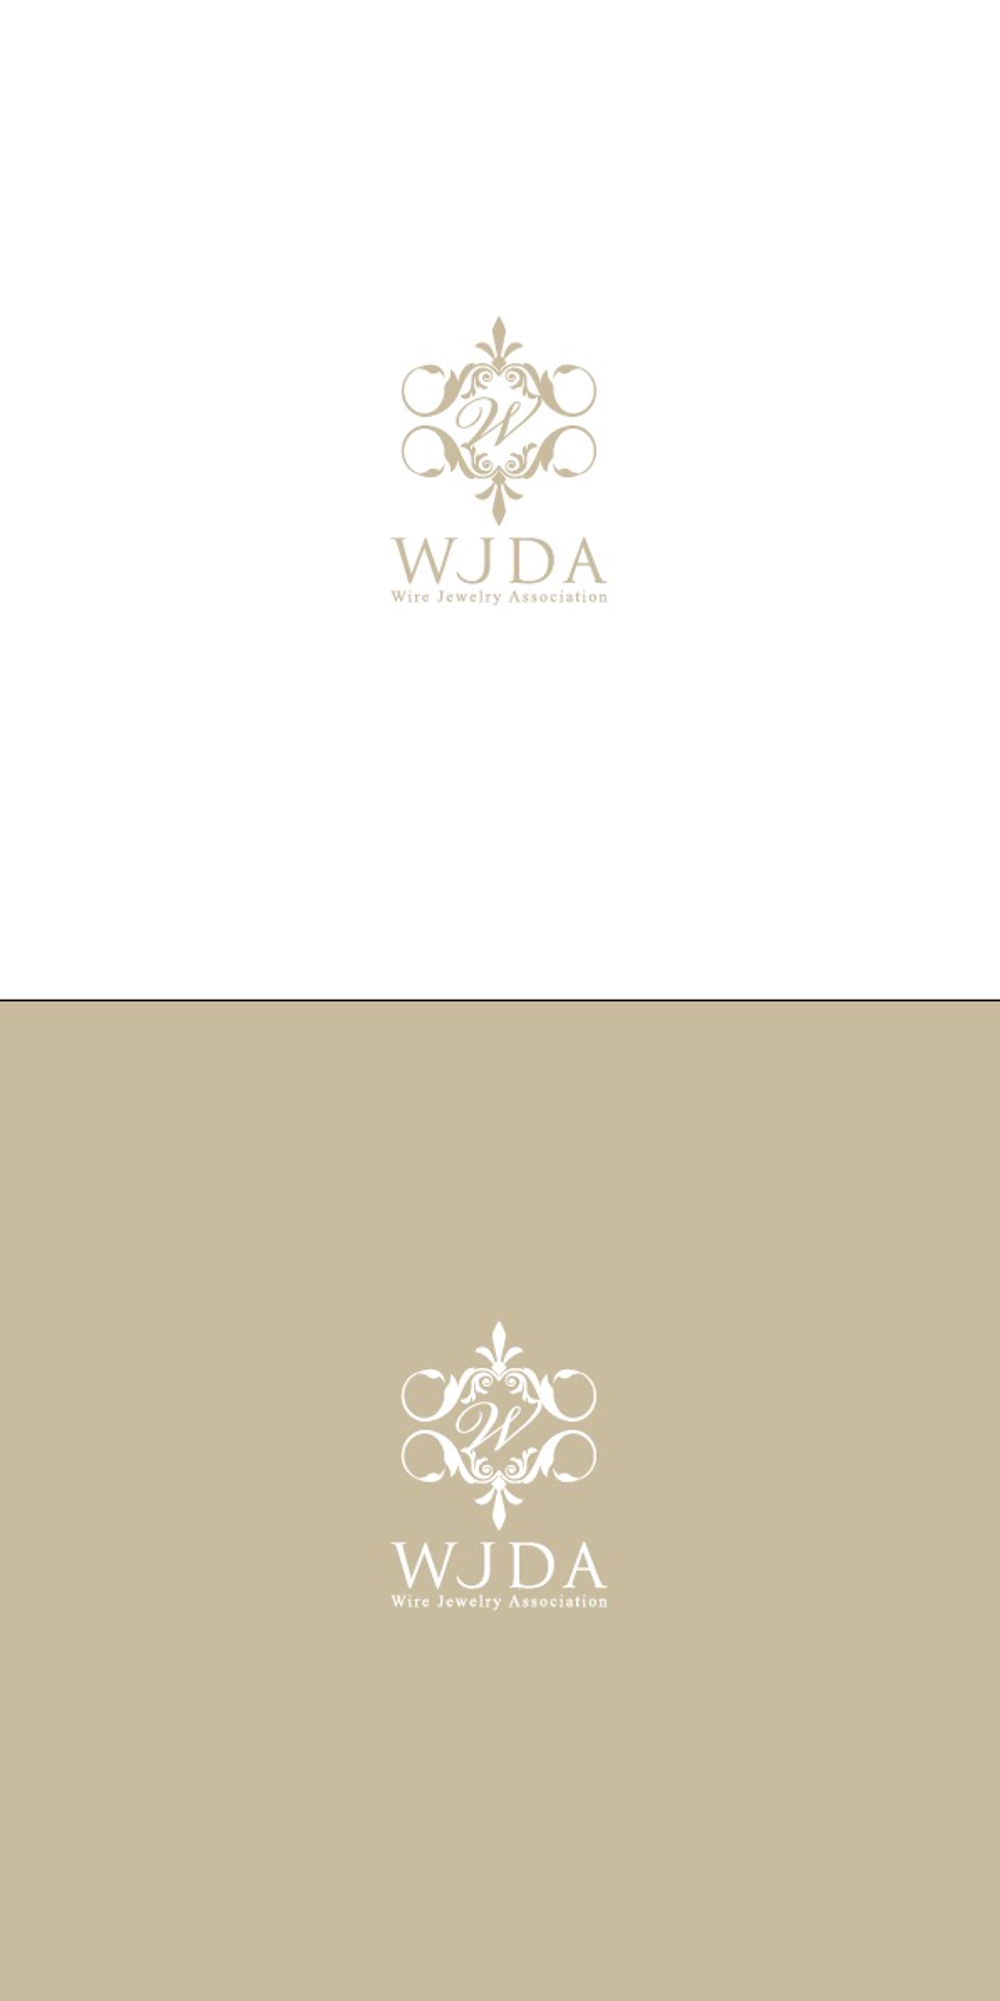 ジュエリー教室 WJDA(ワイヤージュエリーアソシエーション)のロゴ制作